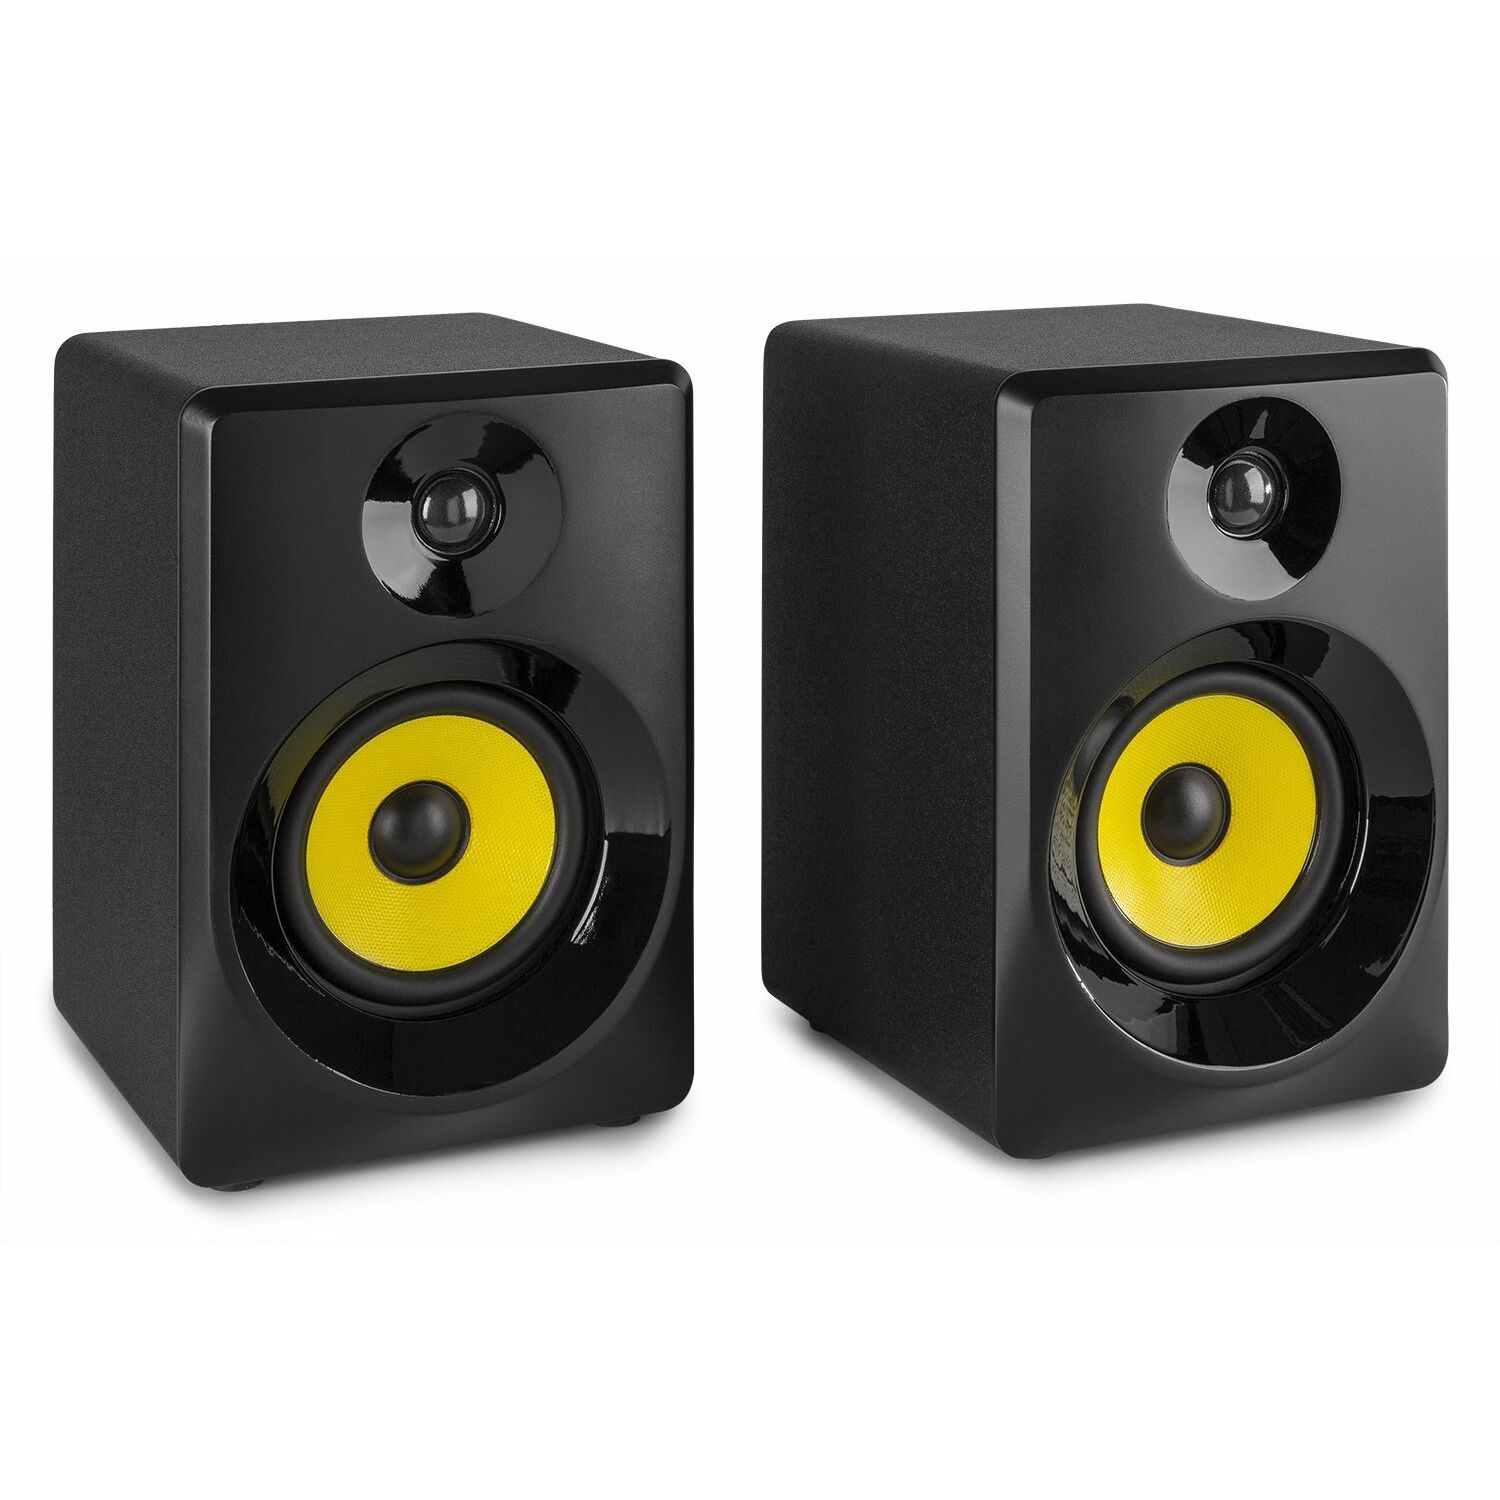 bladerdeeg Wakker worden bak Vonyx SMN30B actieve studio monitor speakers 60W - Zwart kopen?